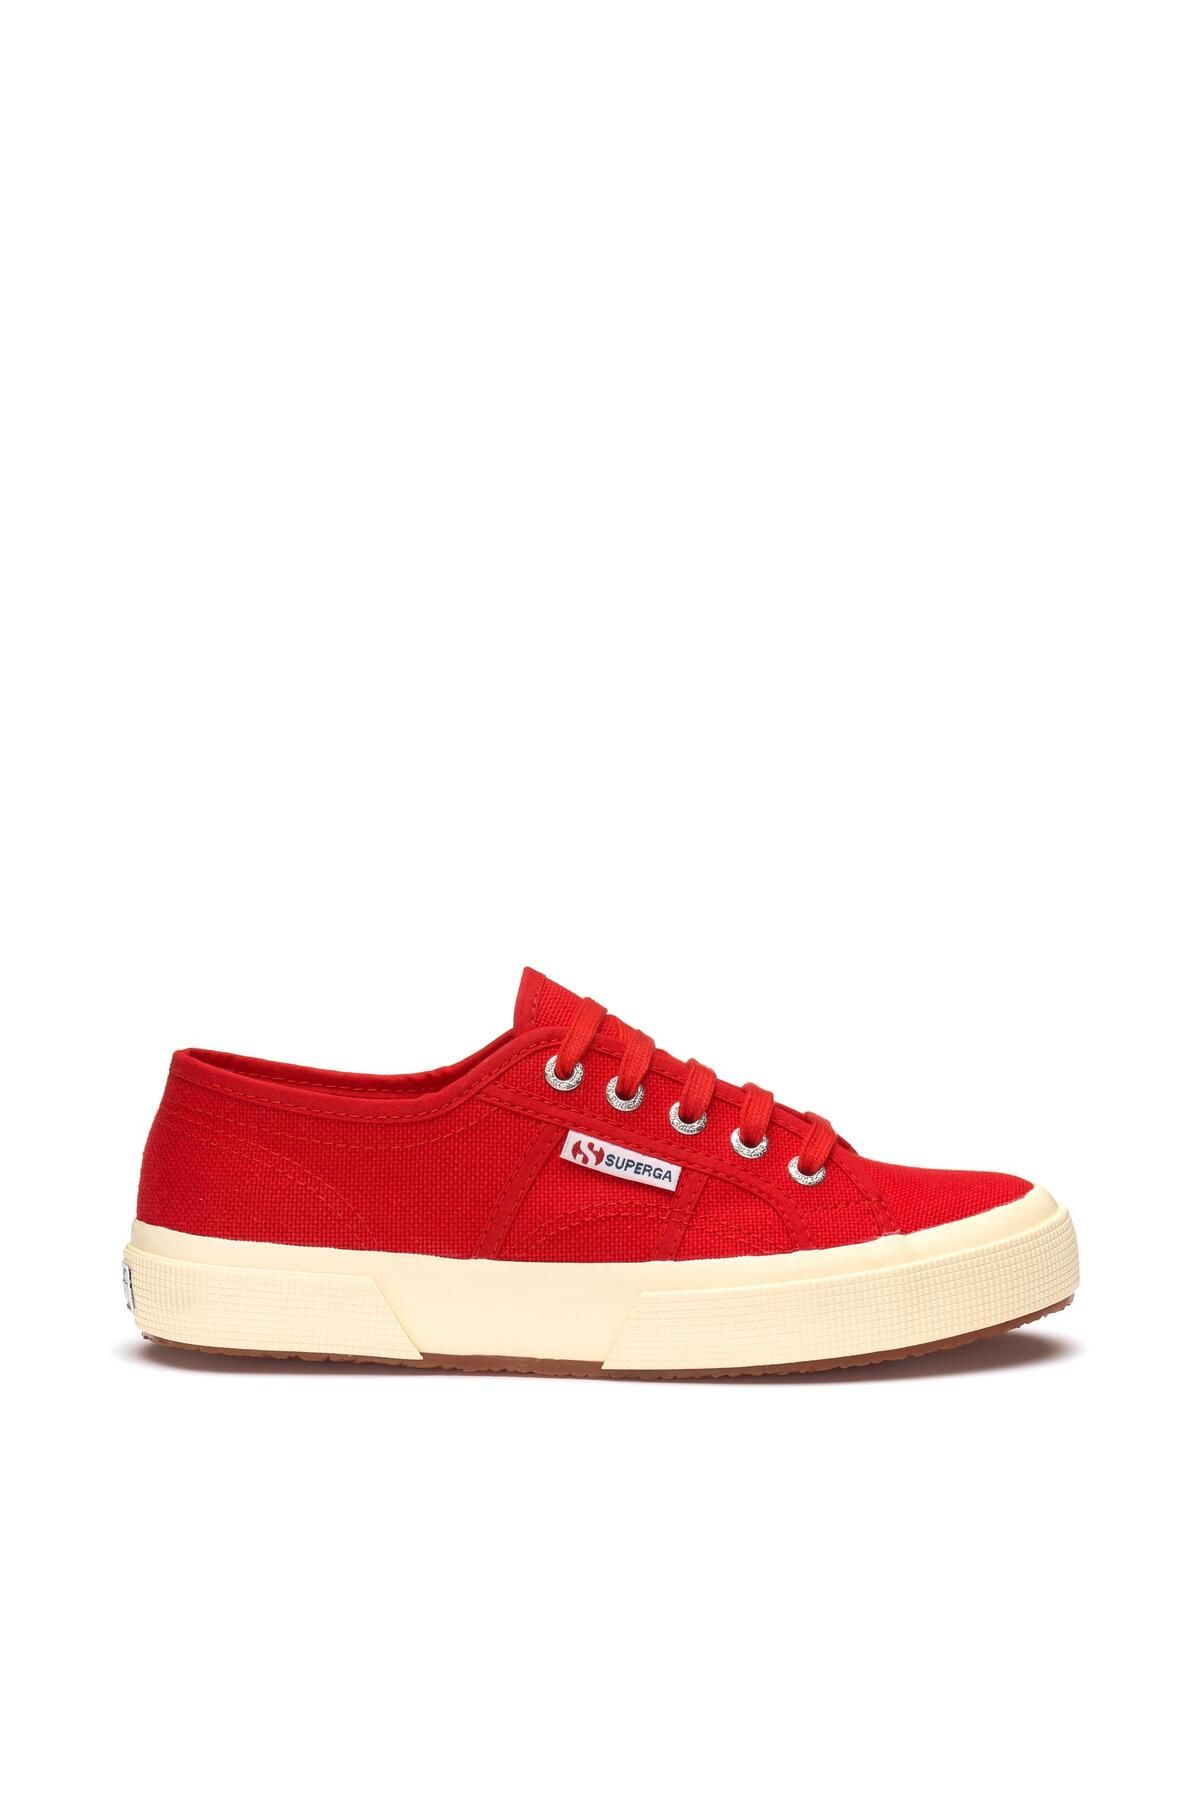 Superga 2750-cotu Classic Unisex Kırmızı Bileksiz Sneaker